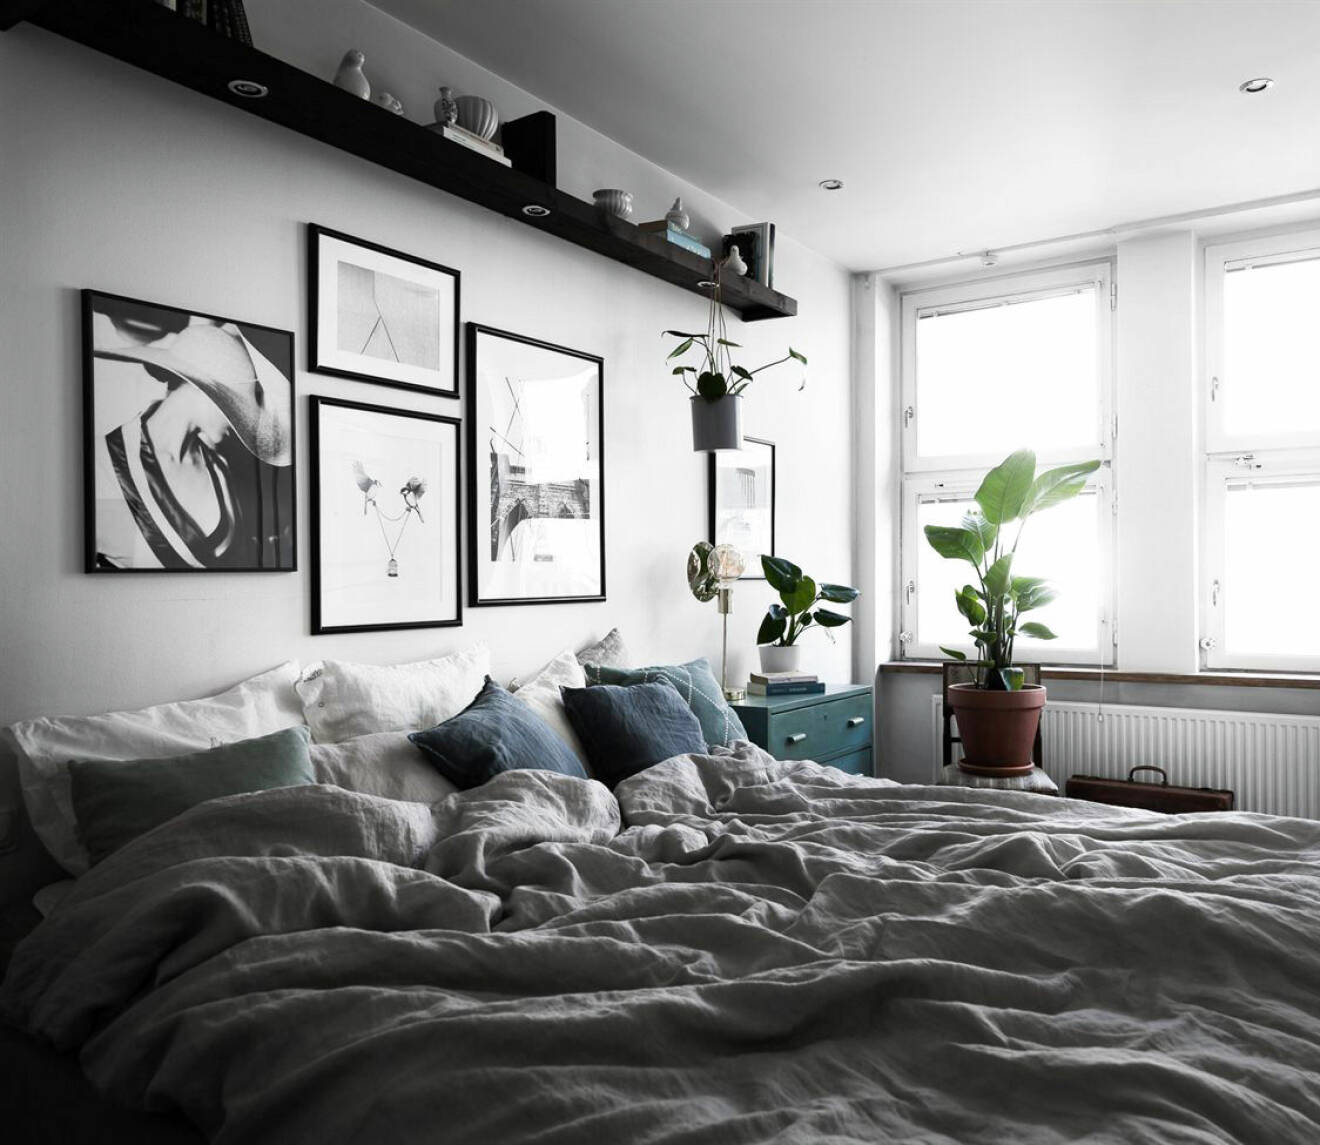 Platsbyggd tavellist med inbyggd belysning som förvaring i sovrummet över sängen